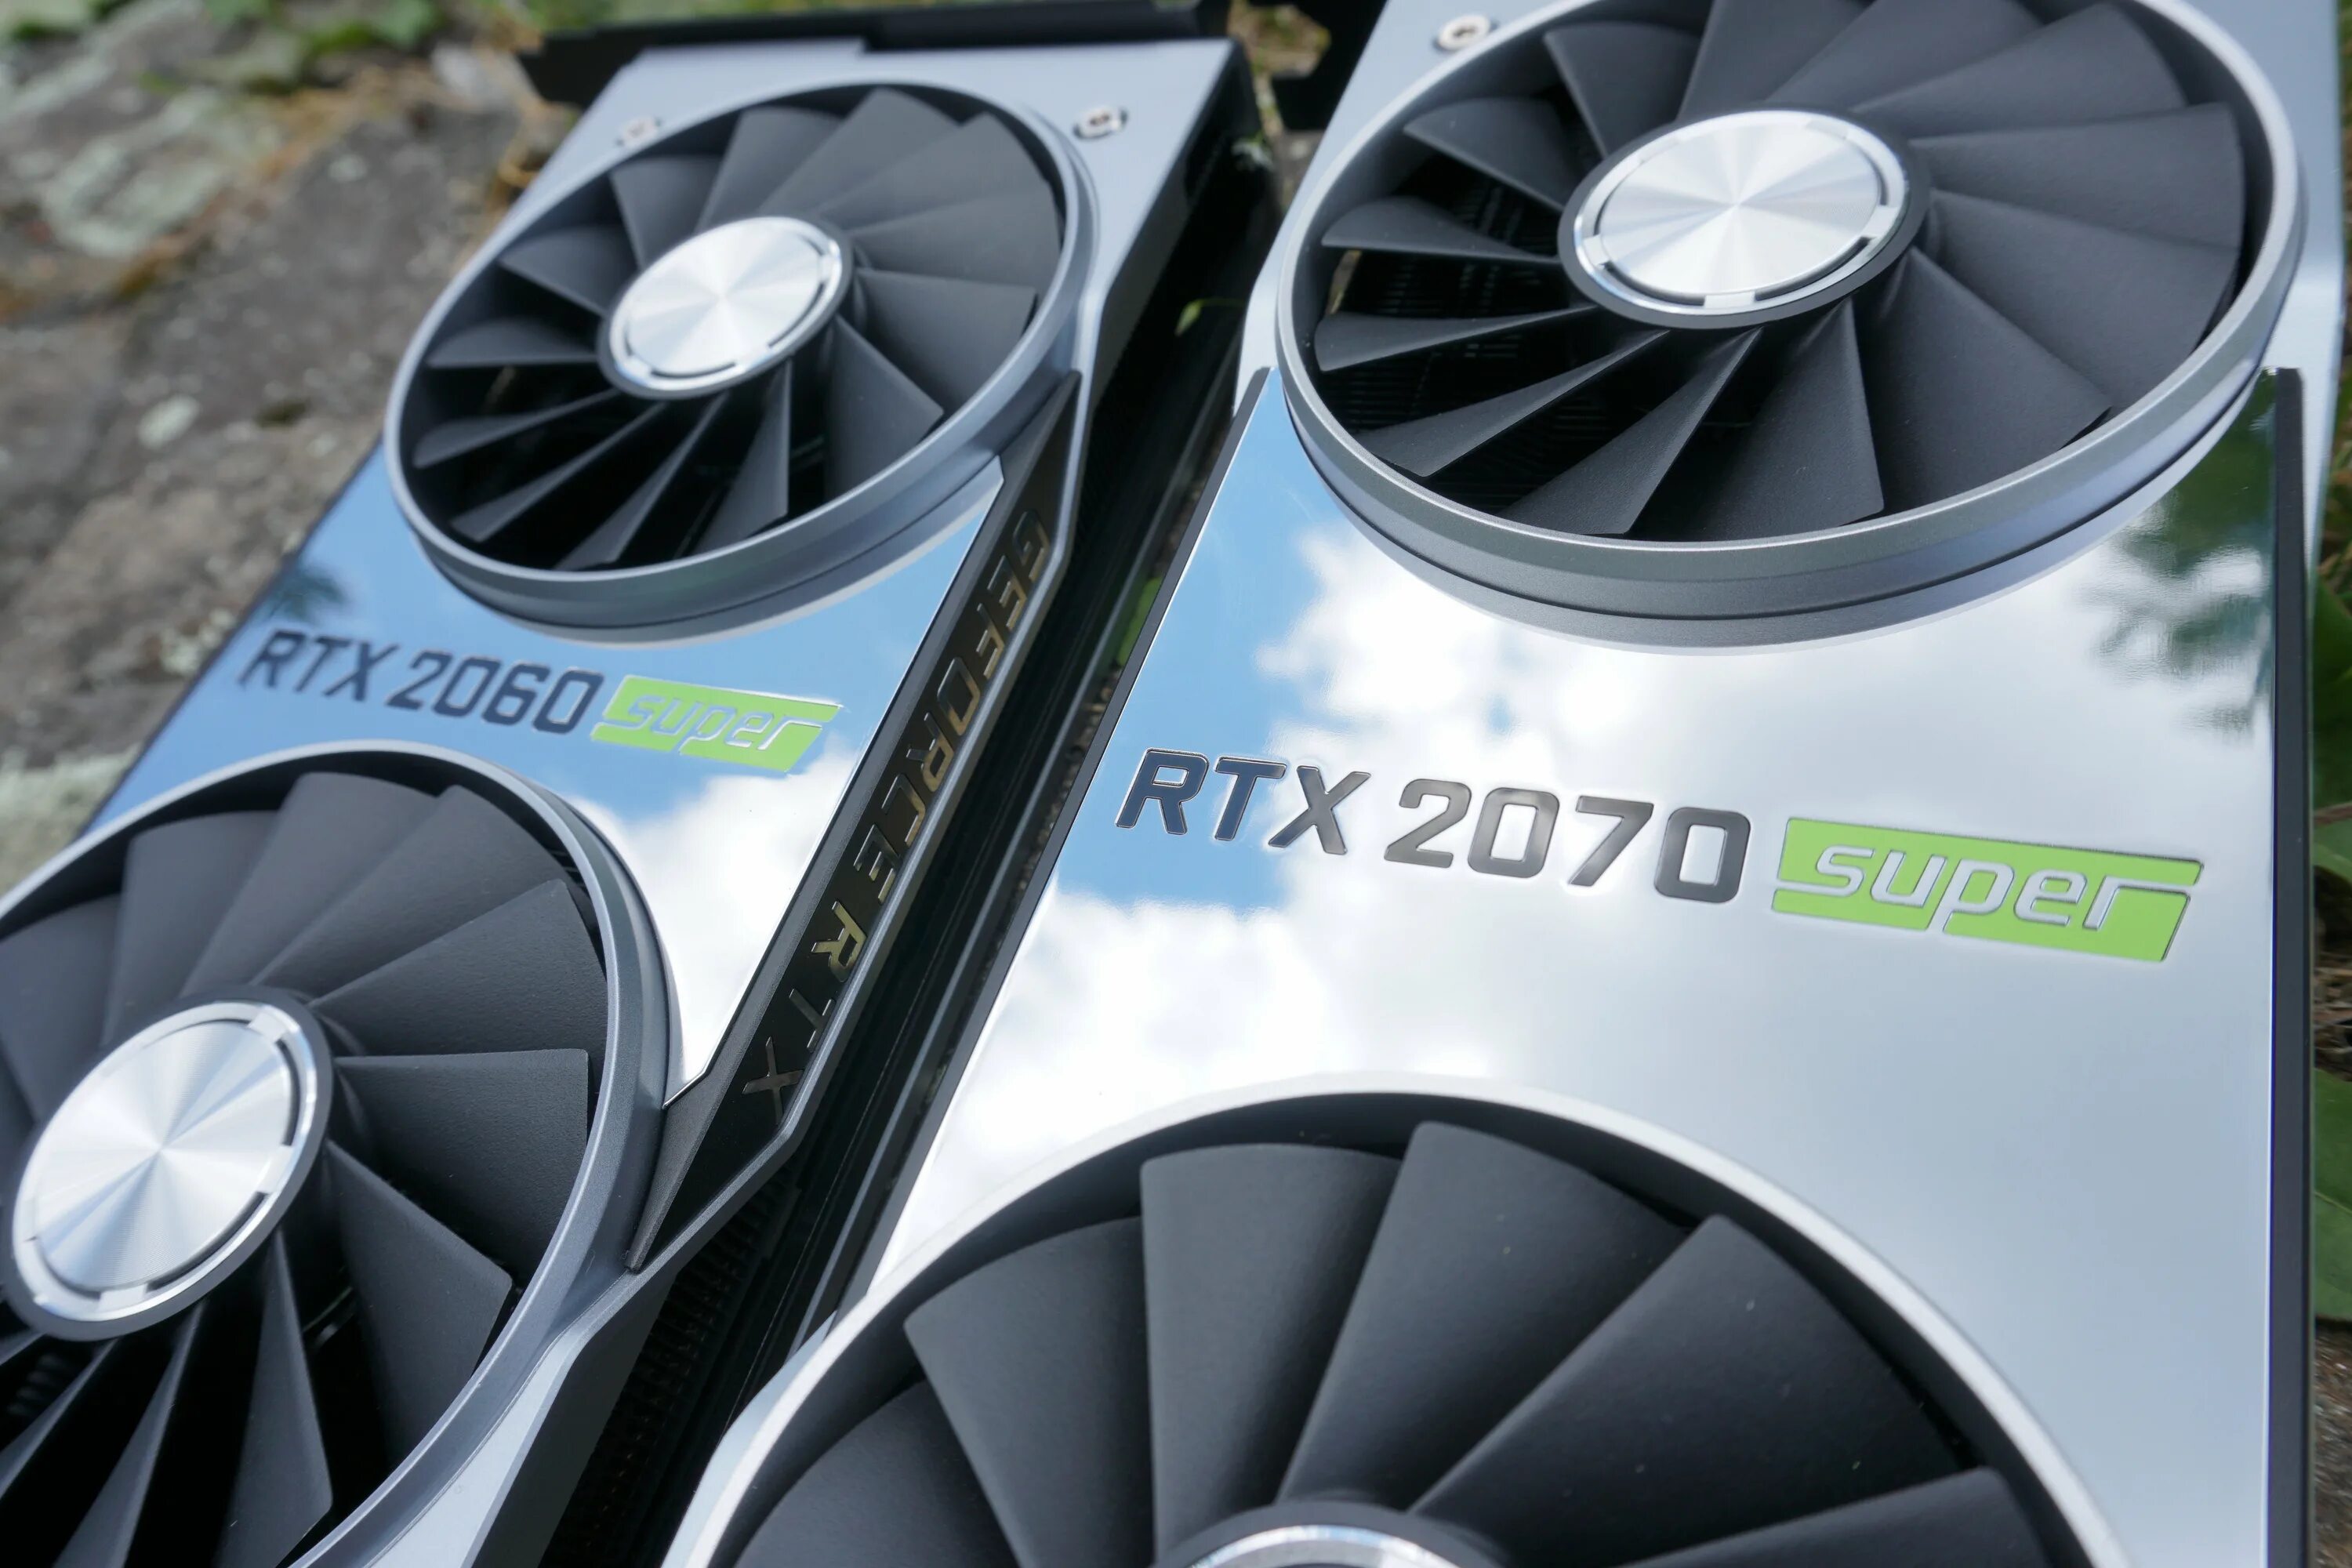 Geforce rtx 2060 super купить. RTX 2070 super. NVIDIA RTX 2070 super. RTX 2070 super 8gb. NVIDIA RTX 2070 super founders Edition.